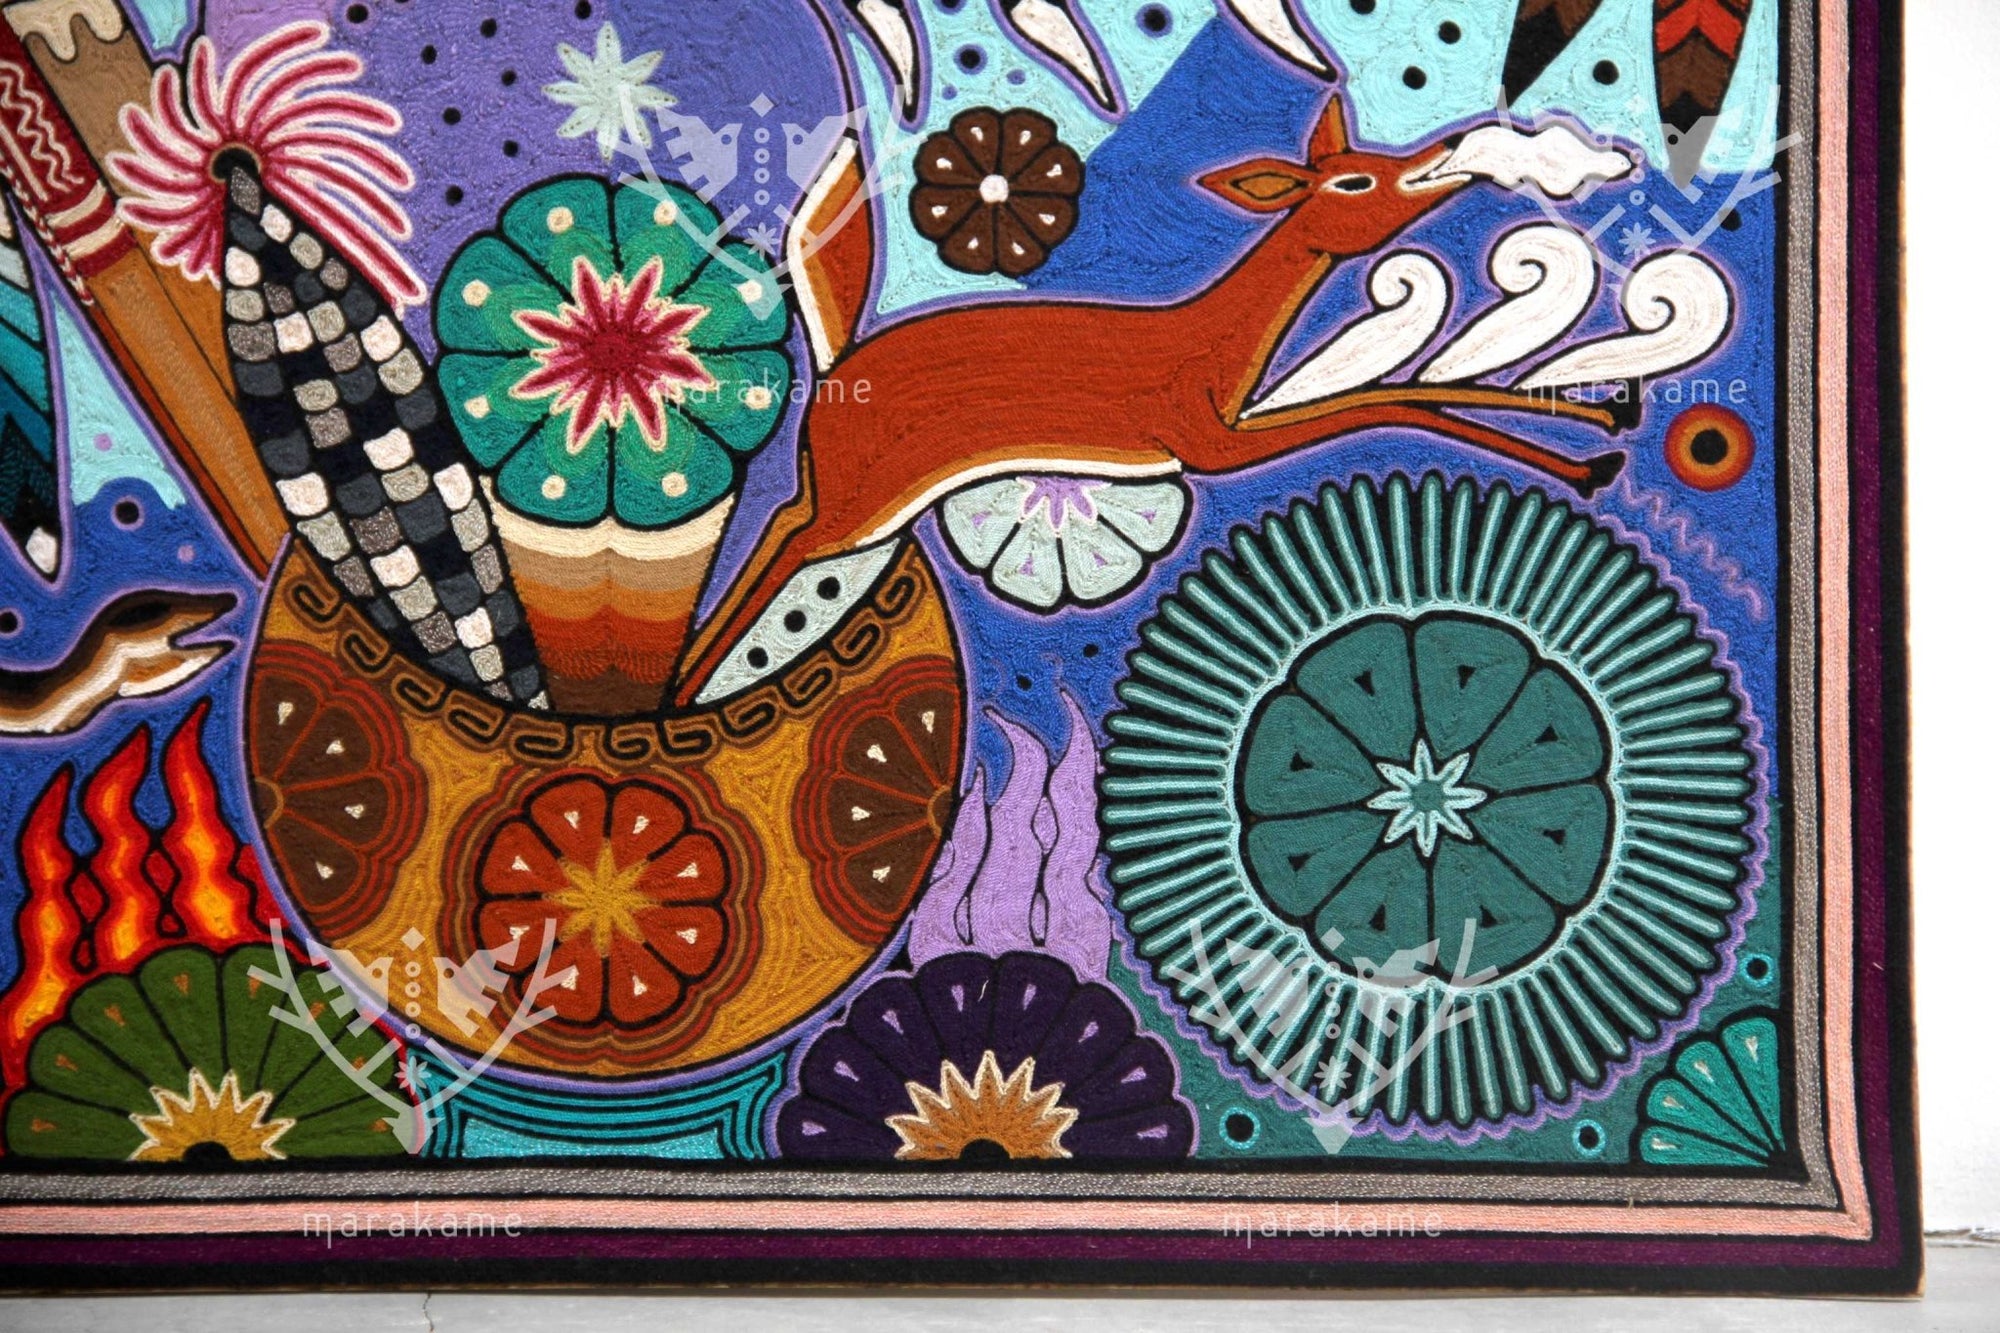 Nierika de Estambre Cuadro Huichol - Tatéi kiewimuka - 70 x 70 cm. - Arte Huichol - Marakame